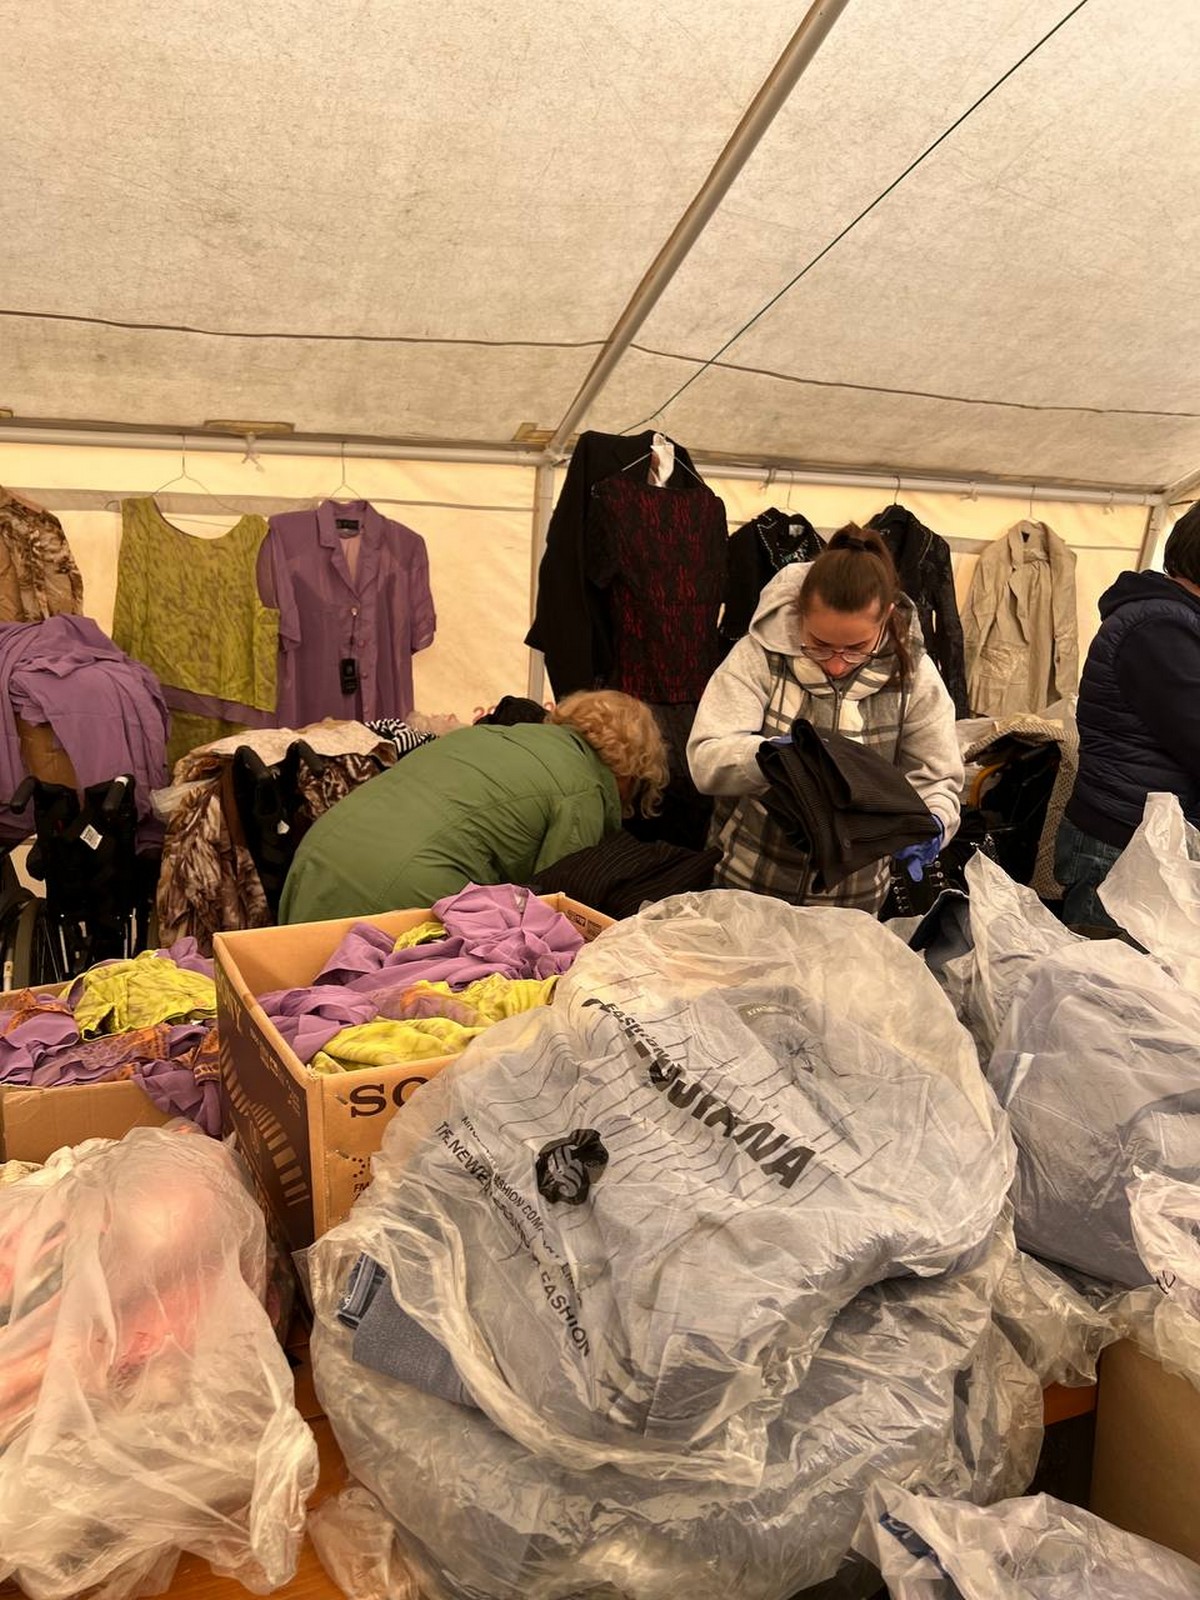 Допомога ВПО у Чернівцях: 22 квітня видаватимуть новий одяг